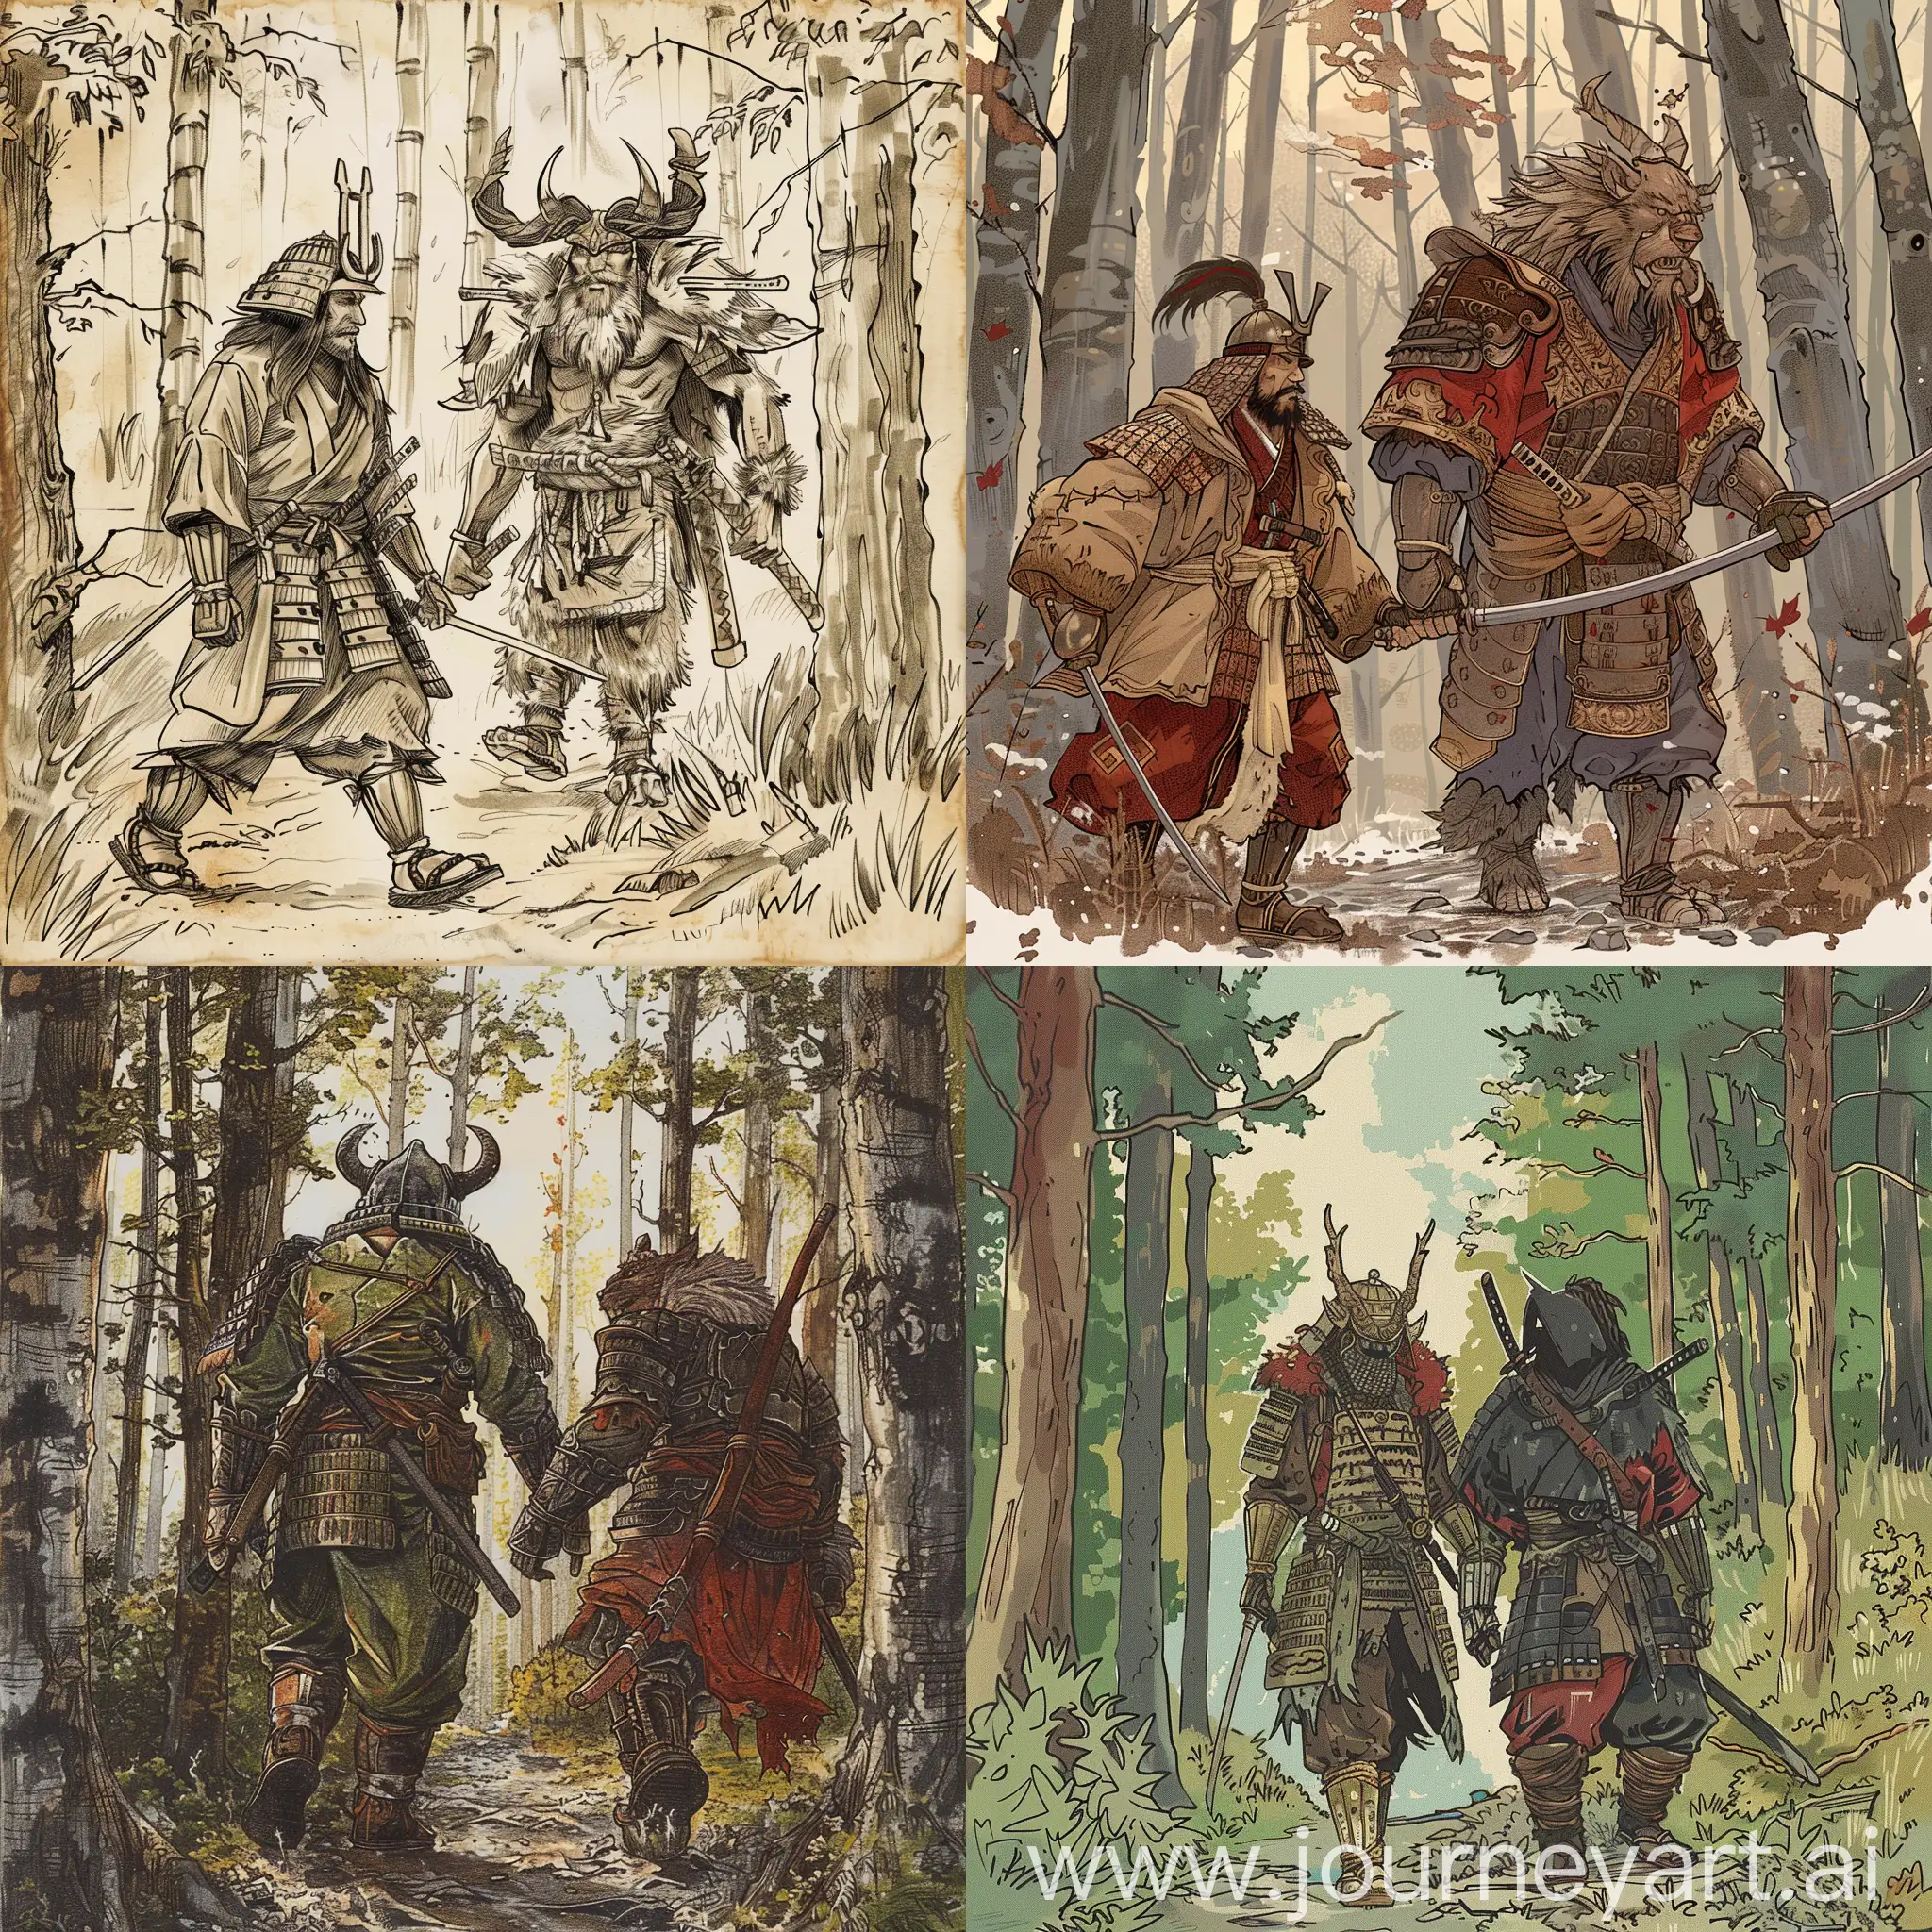 Нарисуй в средневековой стилистике как Самурай и Боготырь идут вместе по лесу